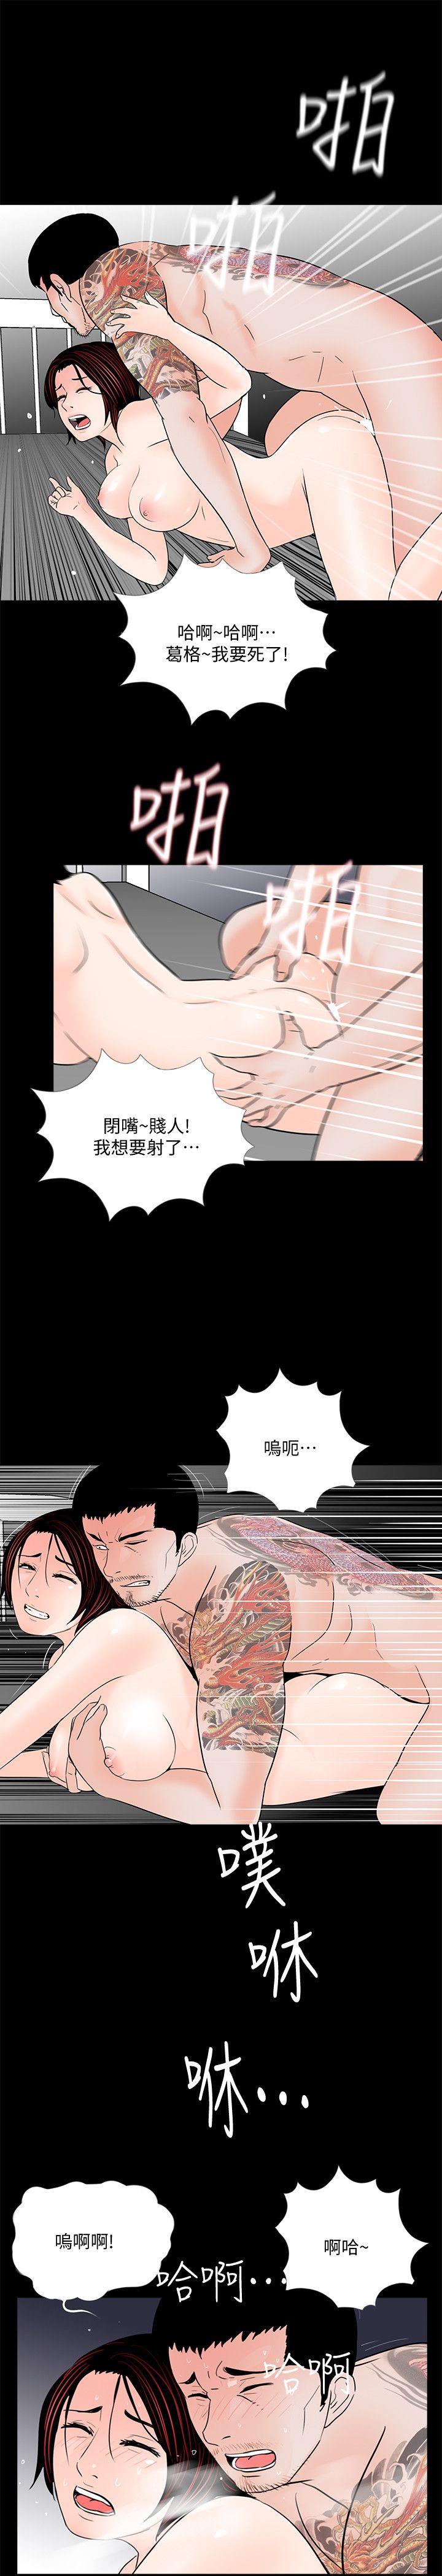 韩国污漫画 夢魘 第52话-真书的梦魇[04 18